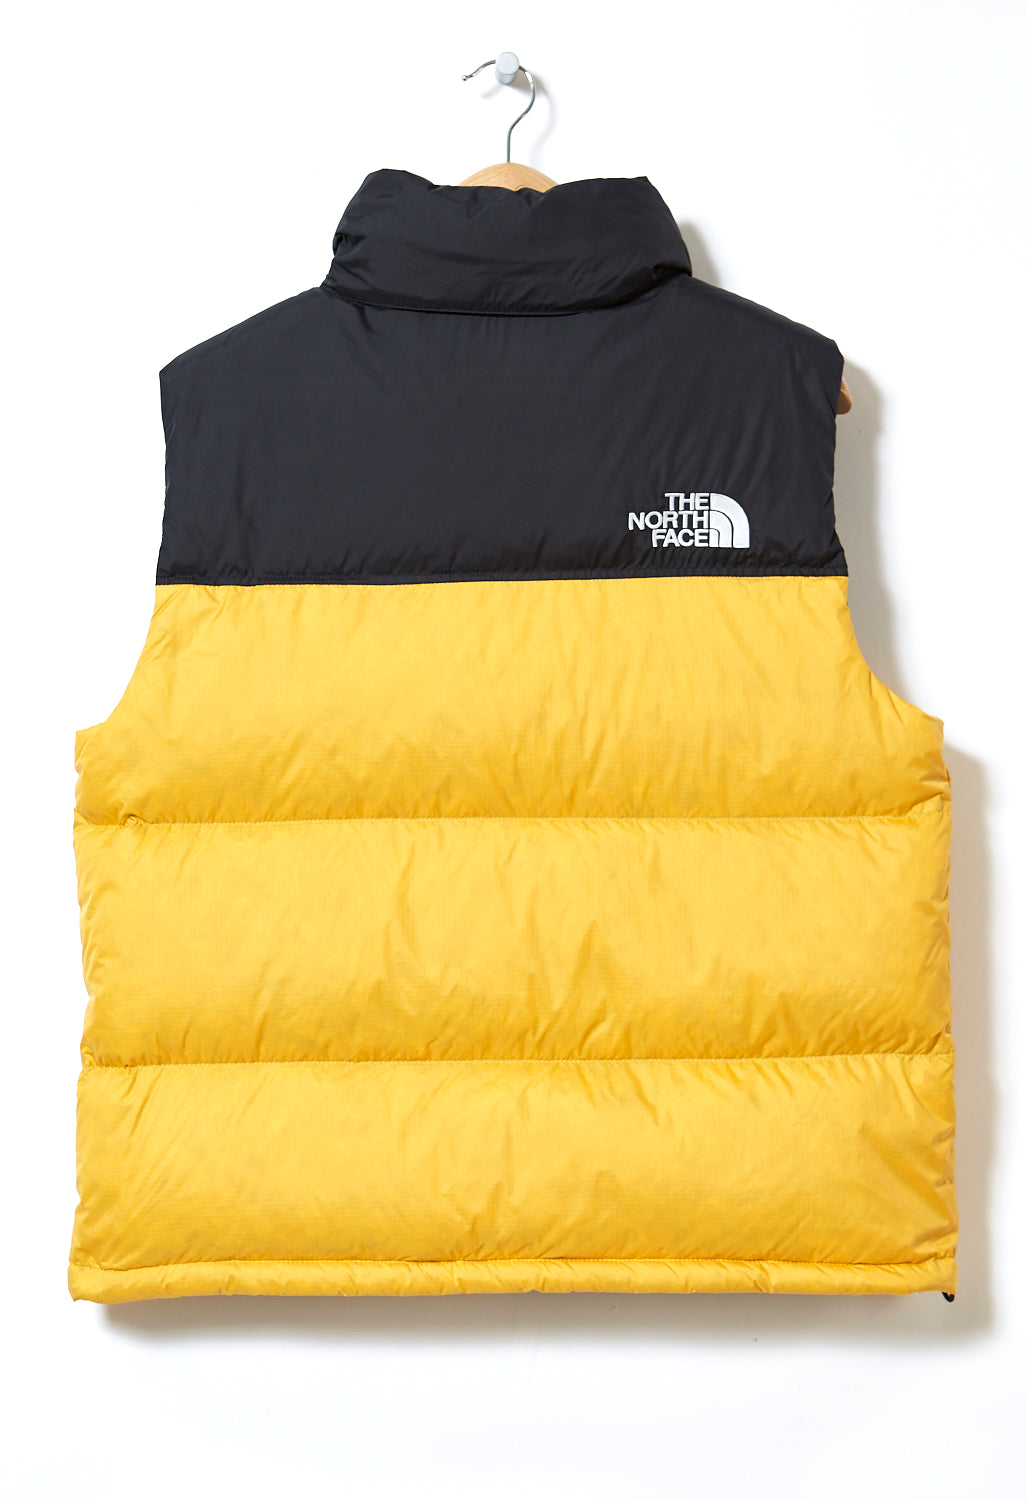 The North Face 1996 Retro Nuptse Men's Vest - TNF Yellow